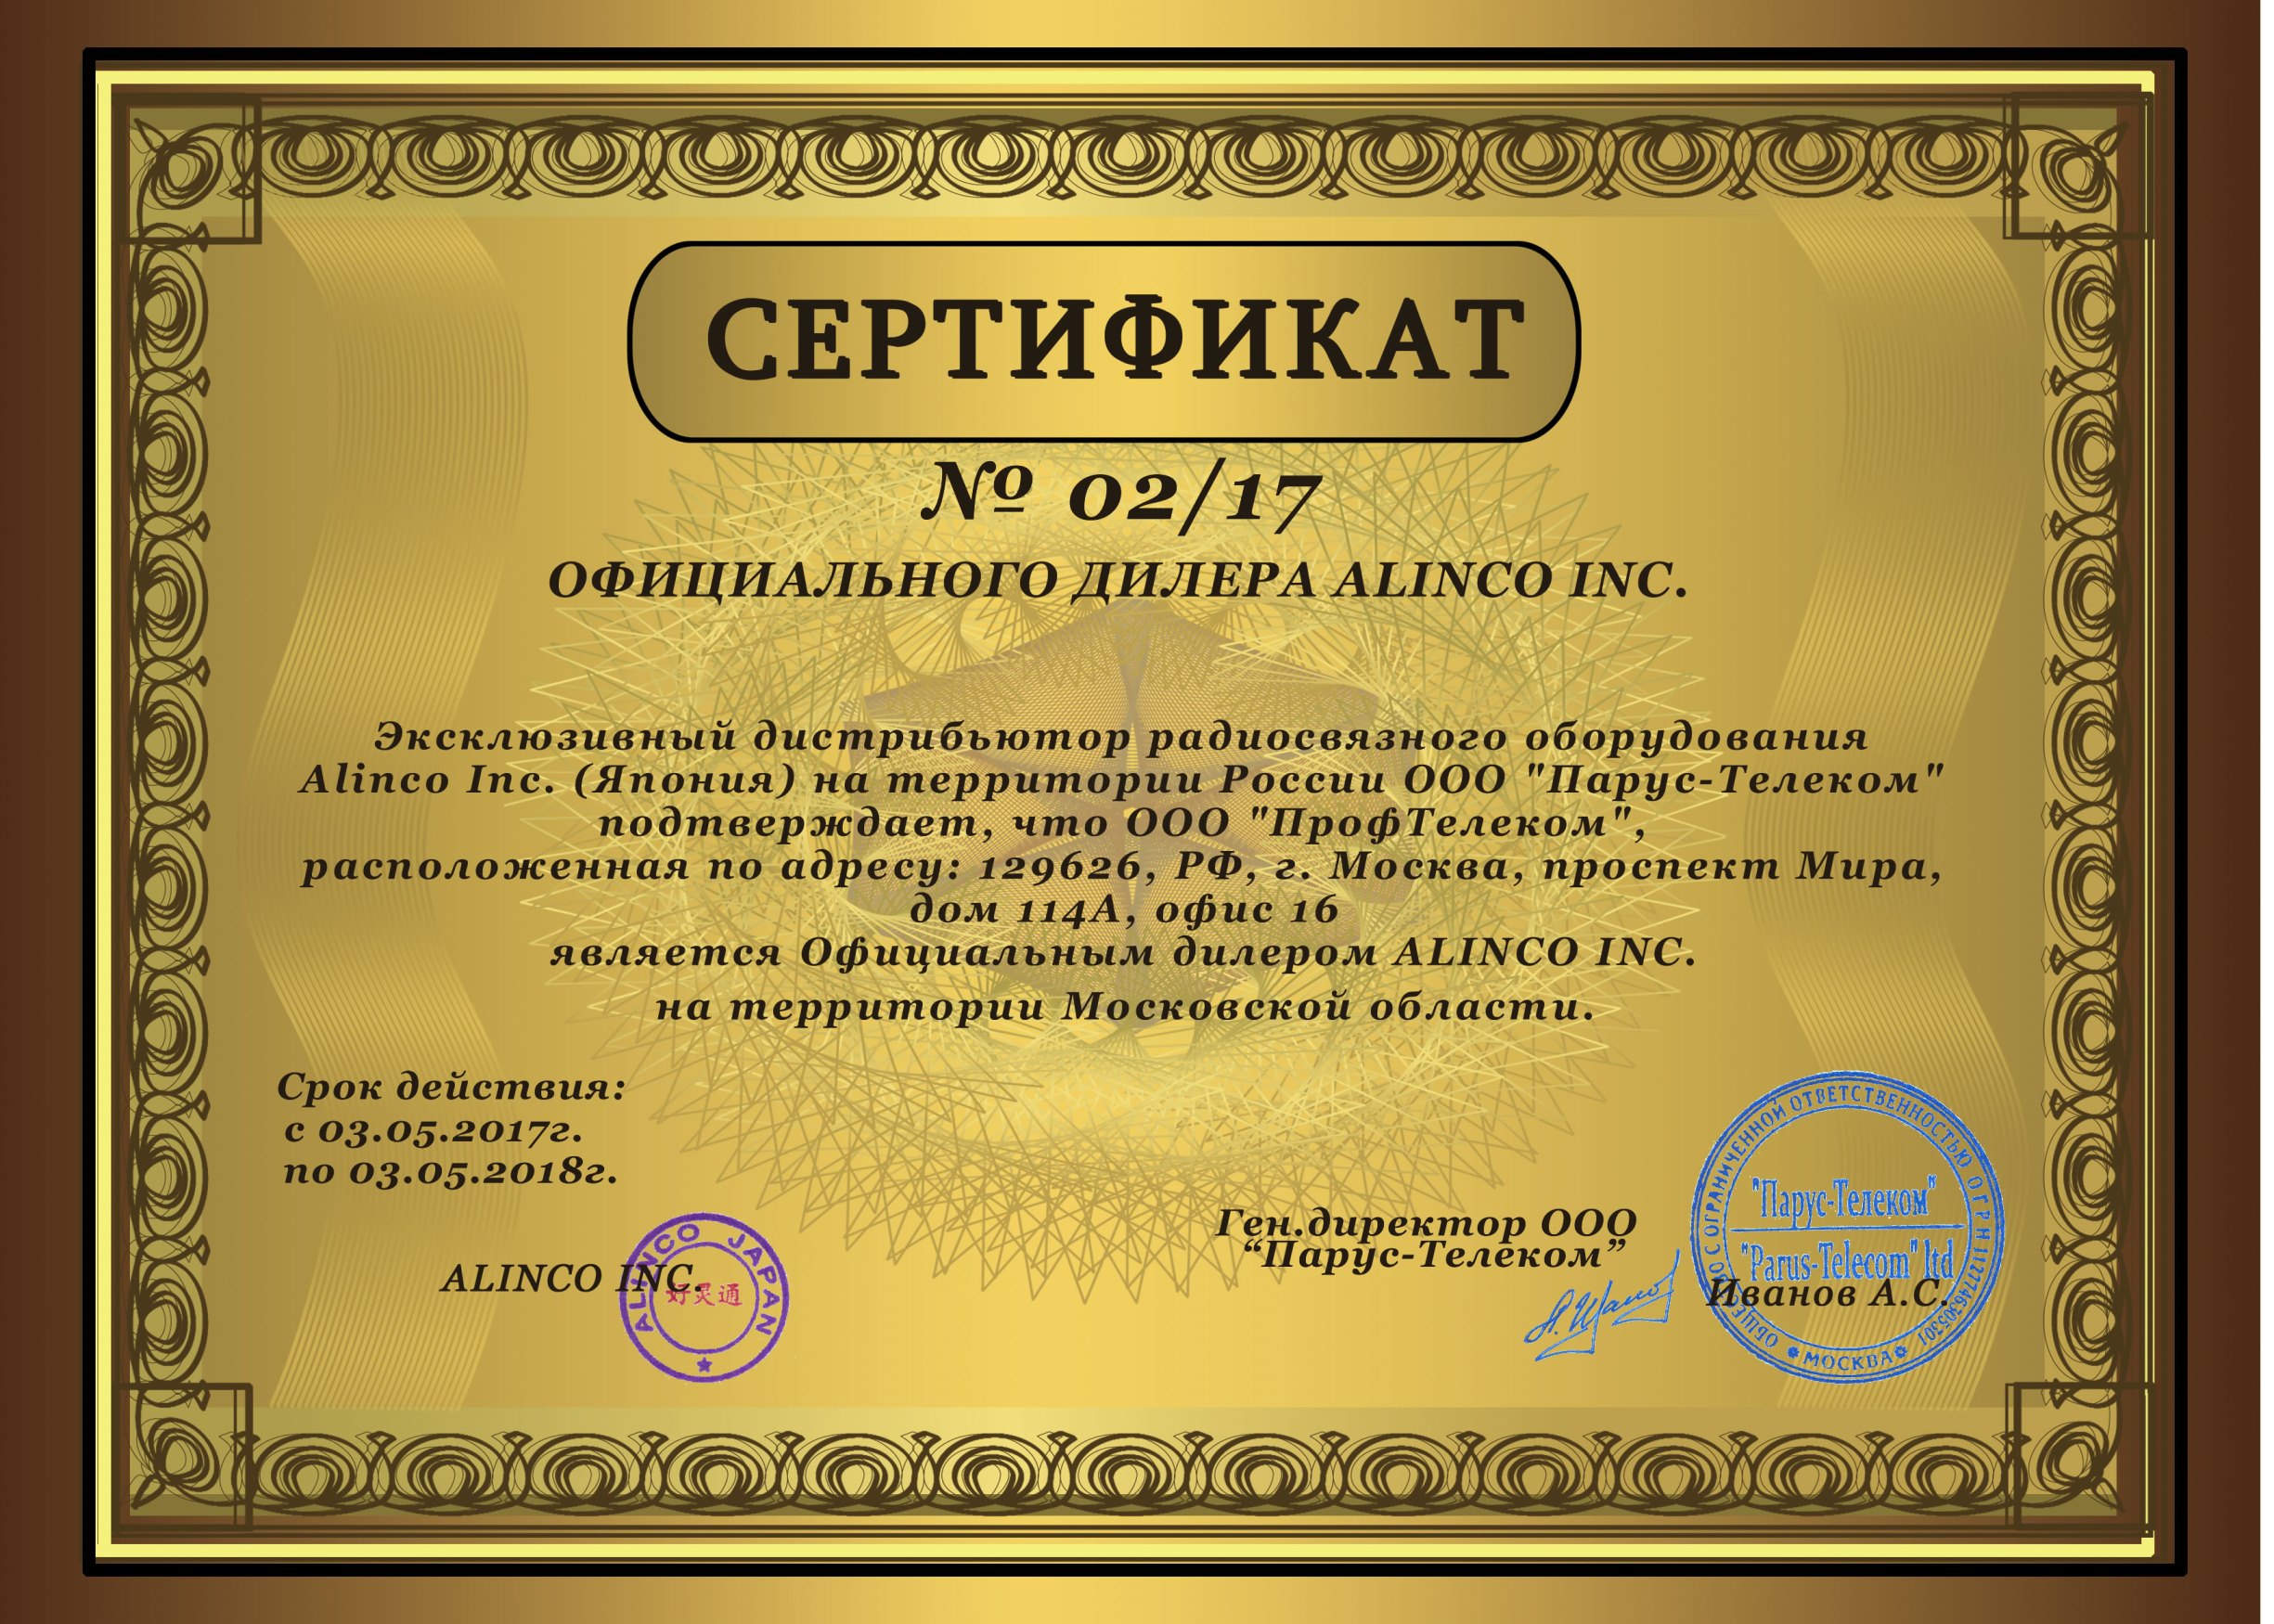 Сертификат дилера Алинко маленький